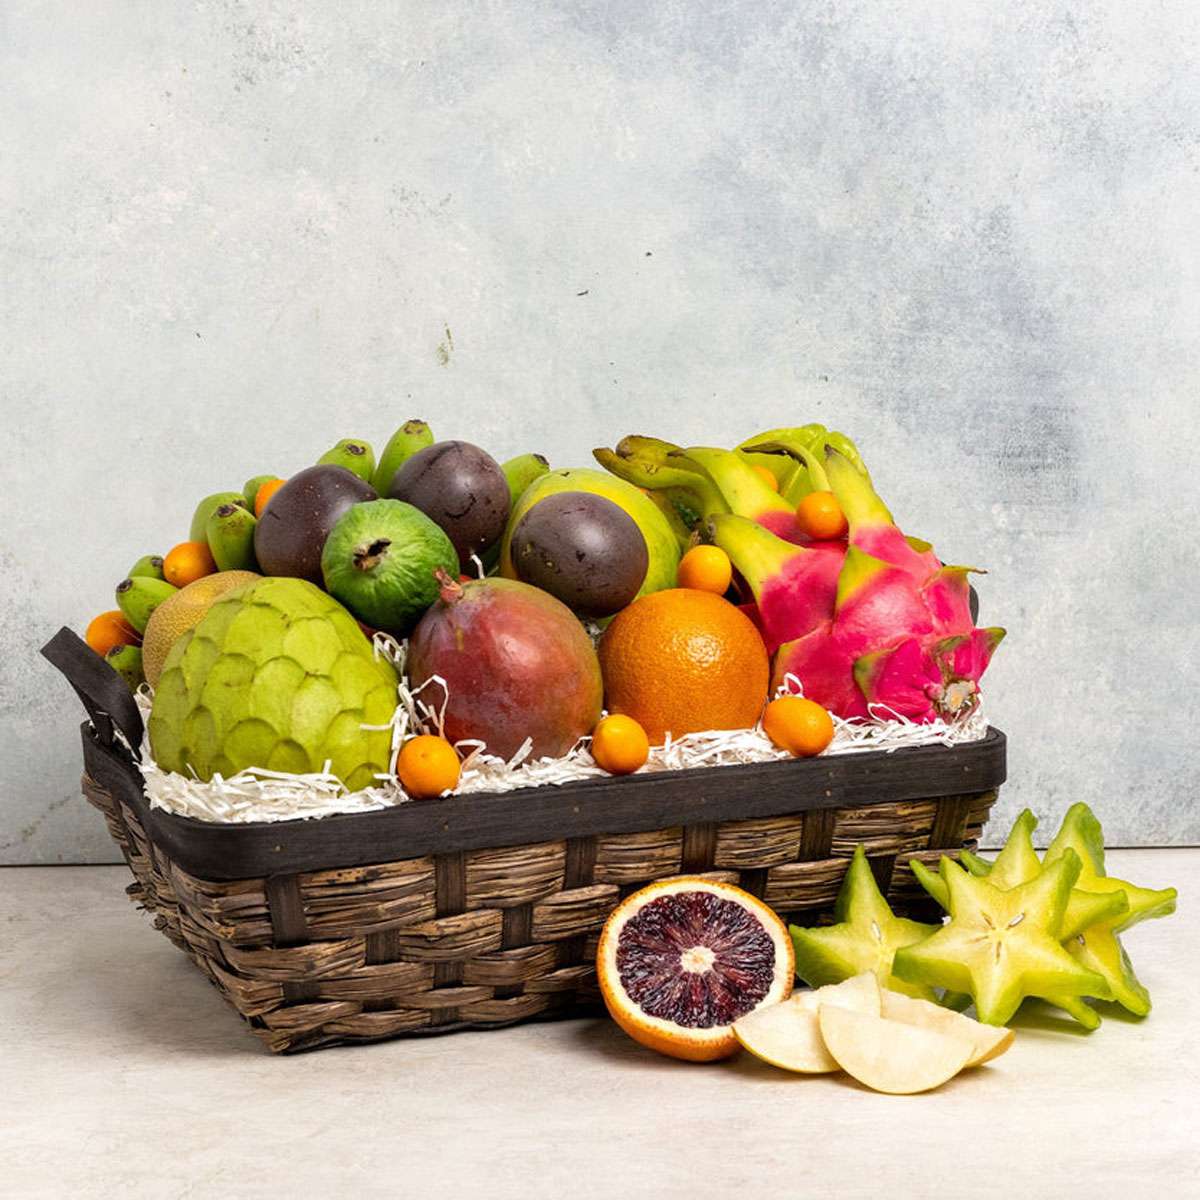 melissa's fruit basket